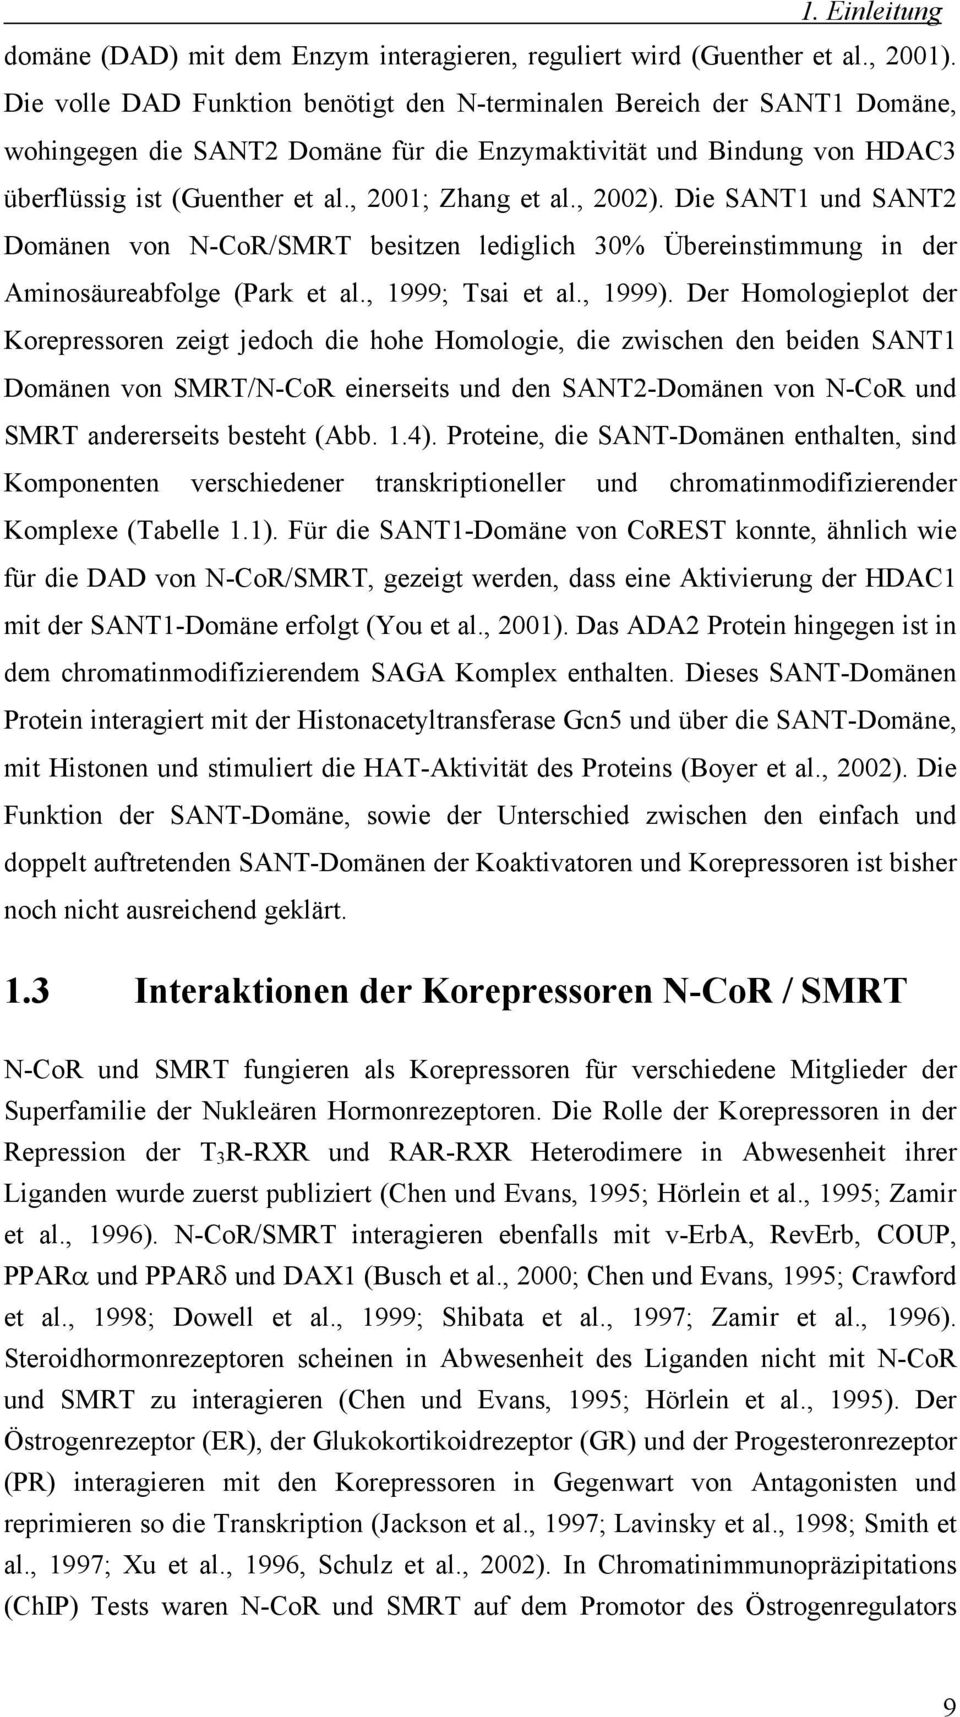 , 2002). Die SANT1 und SANT2 Domänen von N-CoR/SMRT besitzen lediglich 30% Übereinstimmung in der Aminosäureabfolge (Park et al., 1999; Tsai et al., 1999).